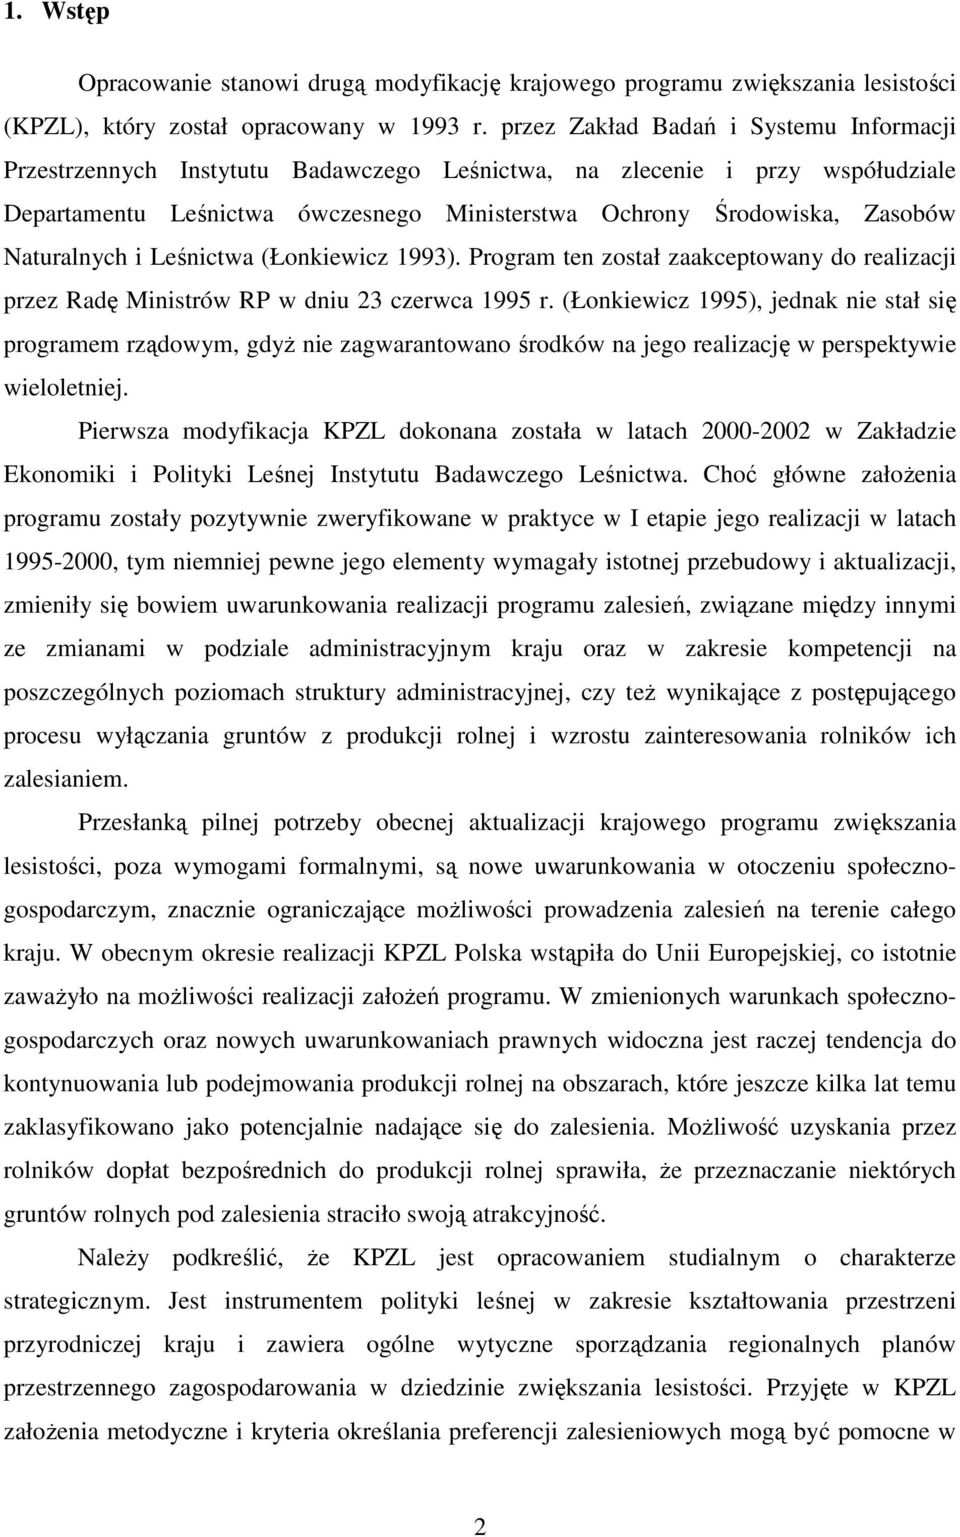 Naturalnych i Leśnictwa (Łonkiewicz 1993). Program ten został zaakceptowany do realizacji przez Radę Ministrów RP w dniu 23 czerwca 1995 r.